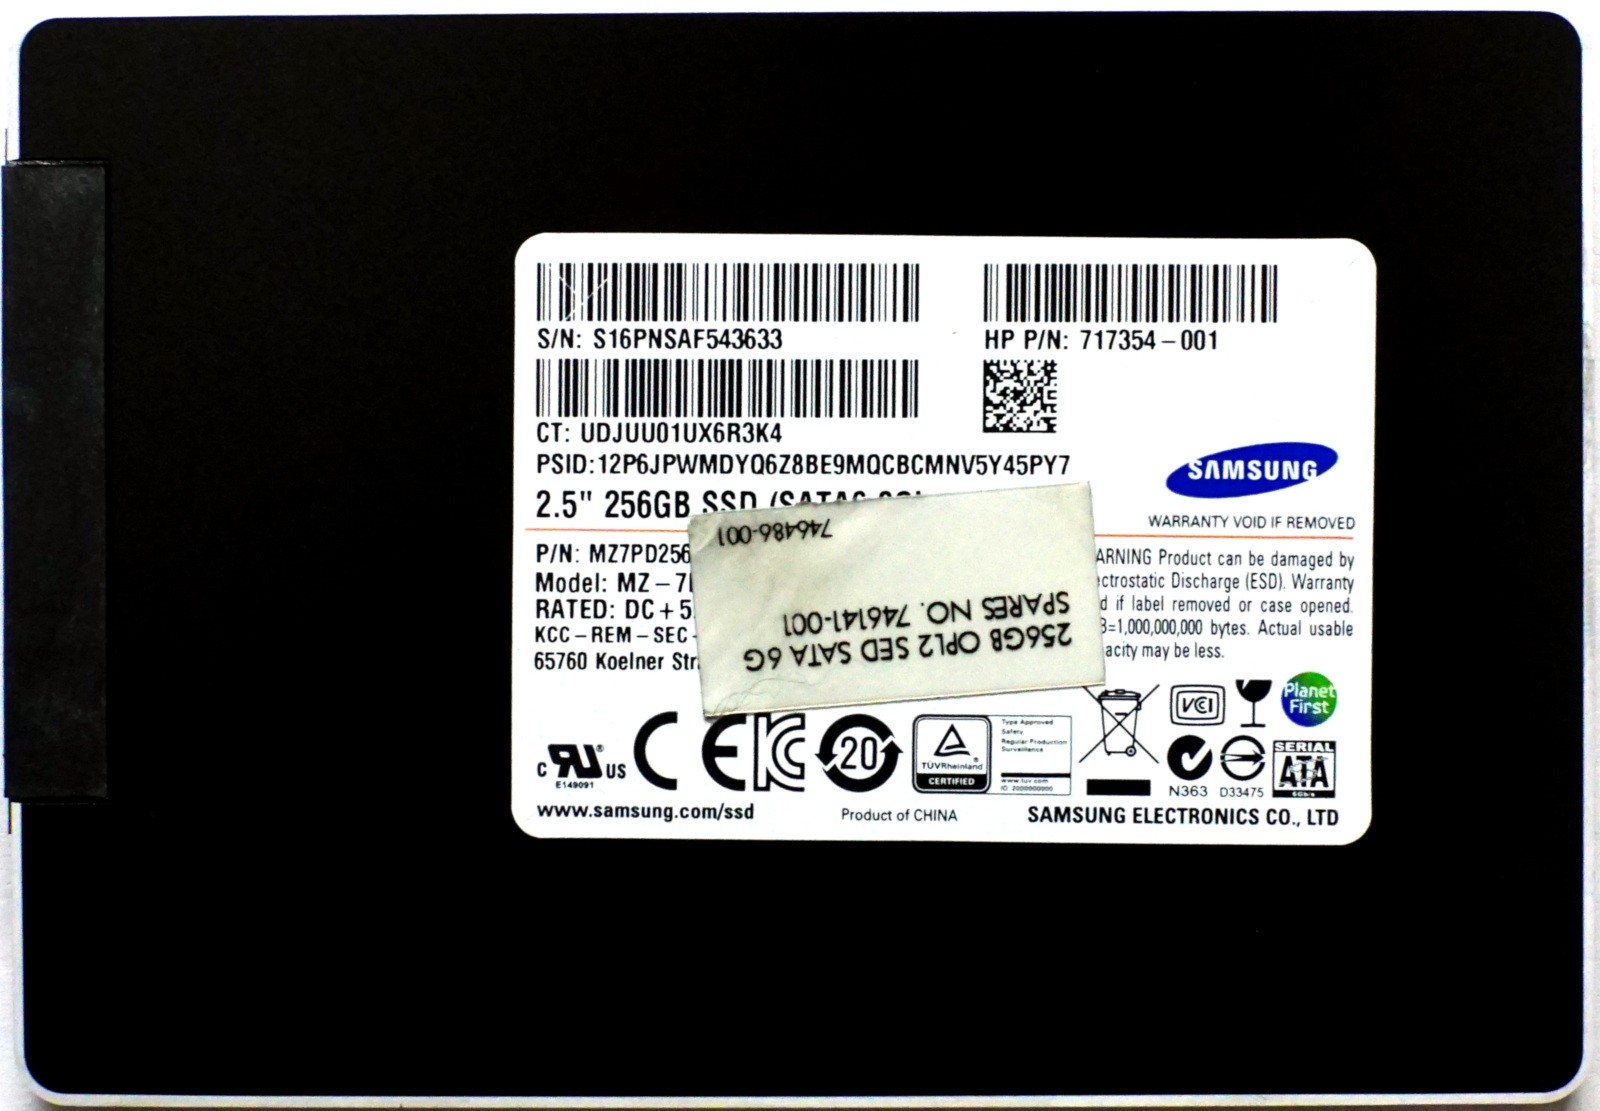 HP (717354-001) 256GB SATA III (SFF) 6Gb/s SSD